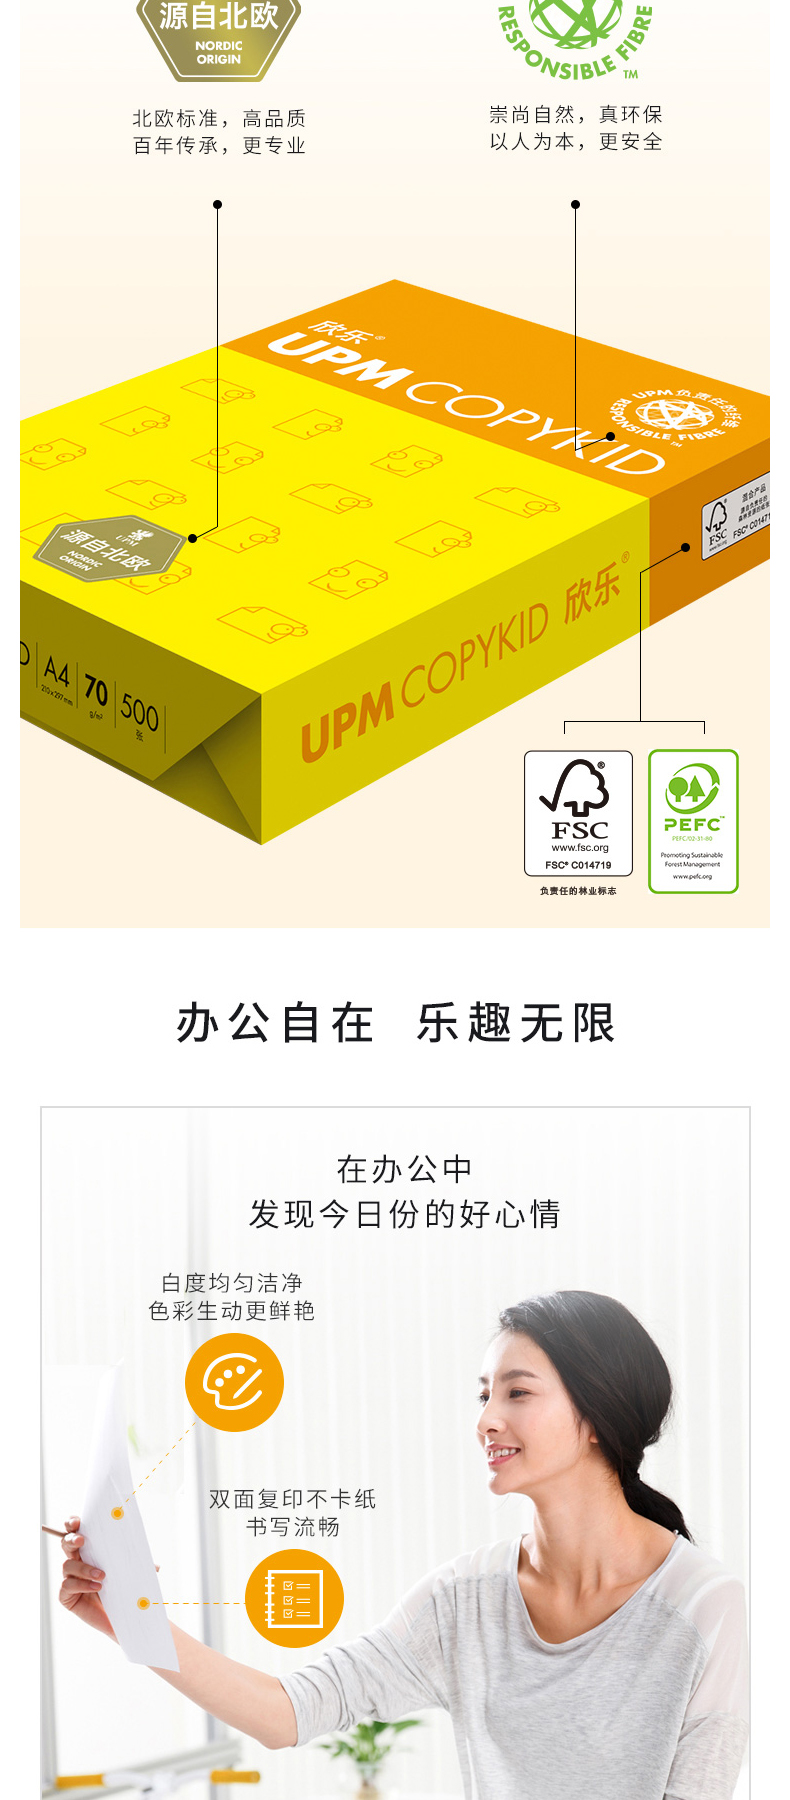 欣乐 UPM 全木浆复印纸 普白 A4 70g  500张/包 5包/箱 (整箱订购)